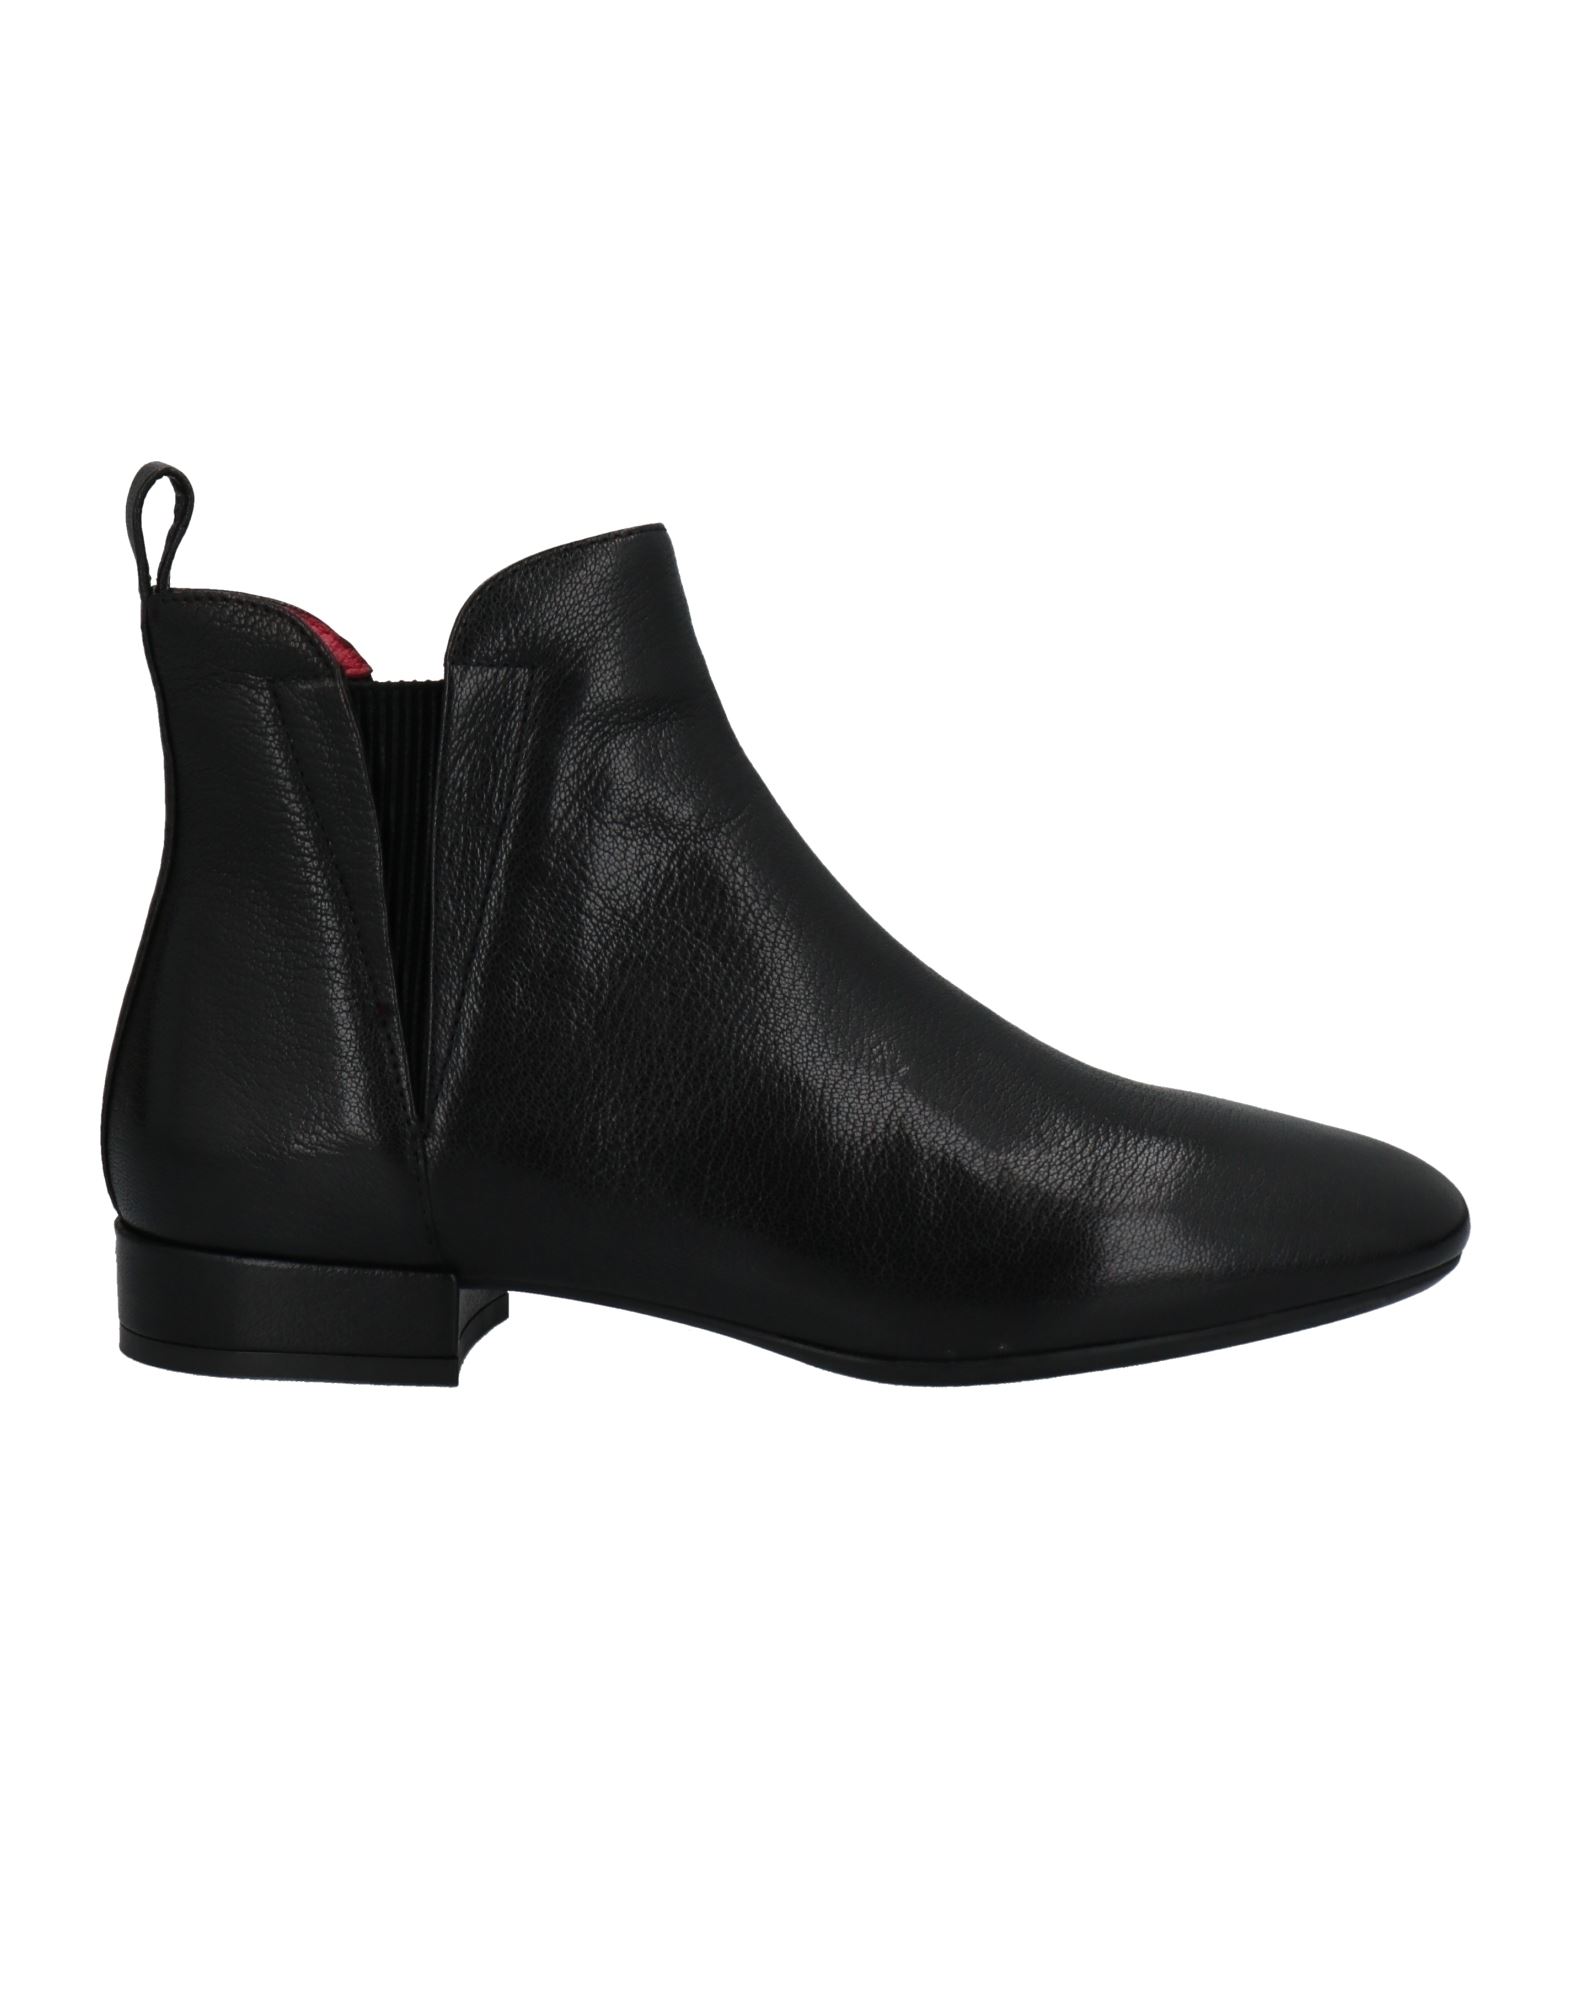 Shop Pas De Rouge Woman Ankle Boots Black Size 7 Soft Leather